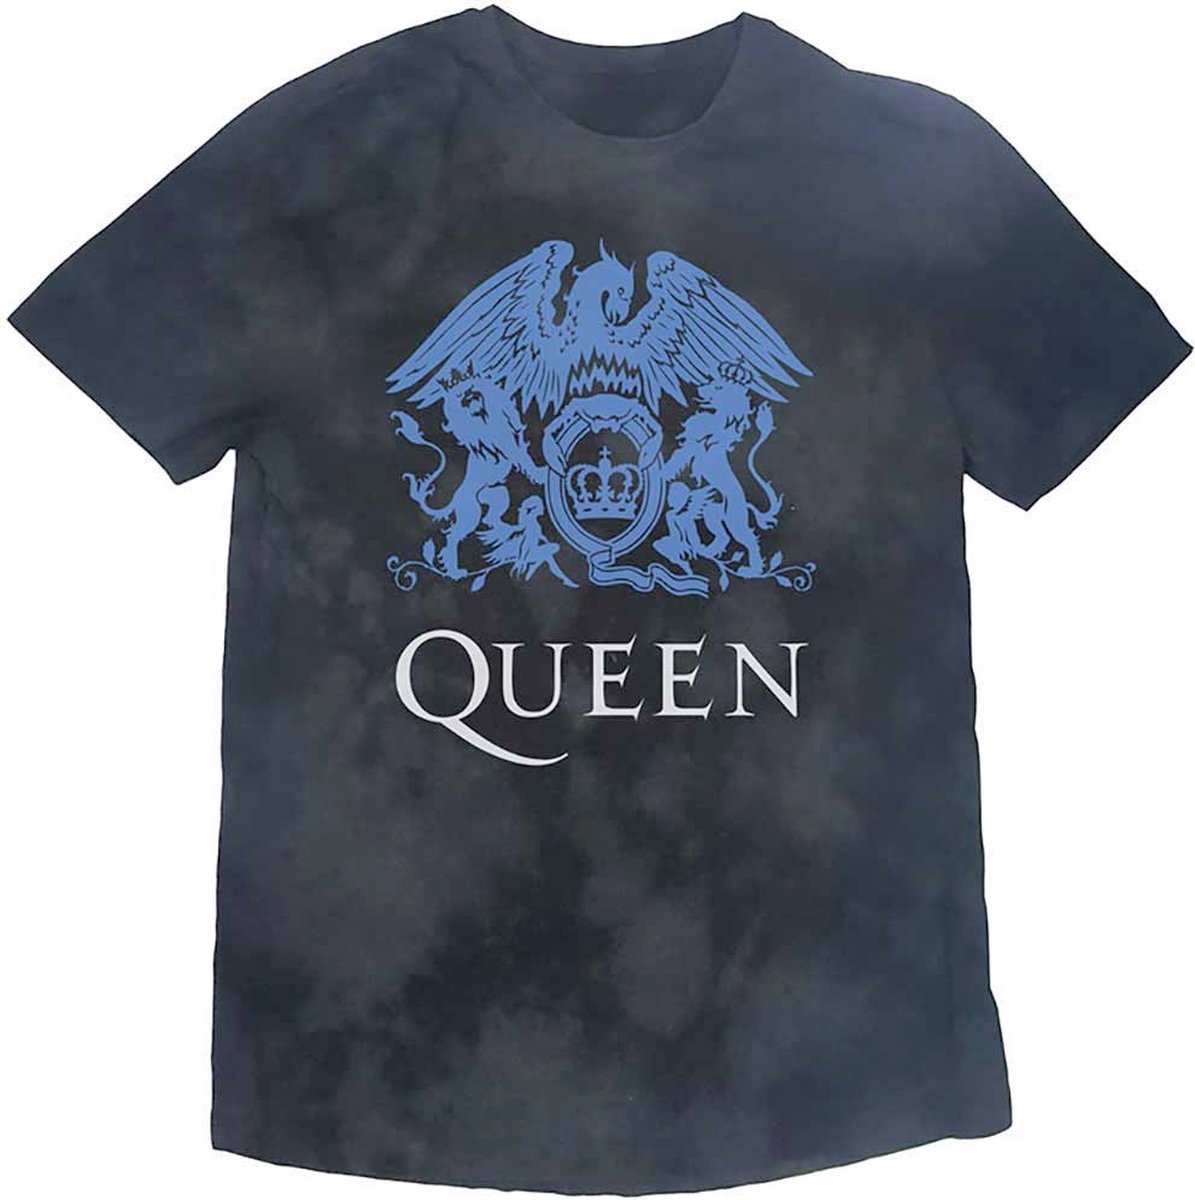 Queen - Blue Crest Kinder T-shirt - Kids tm 8 jaar - Zwart